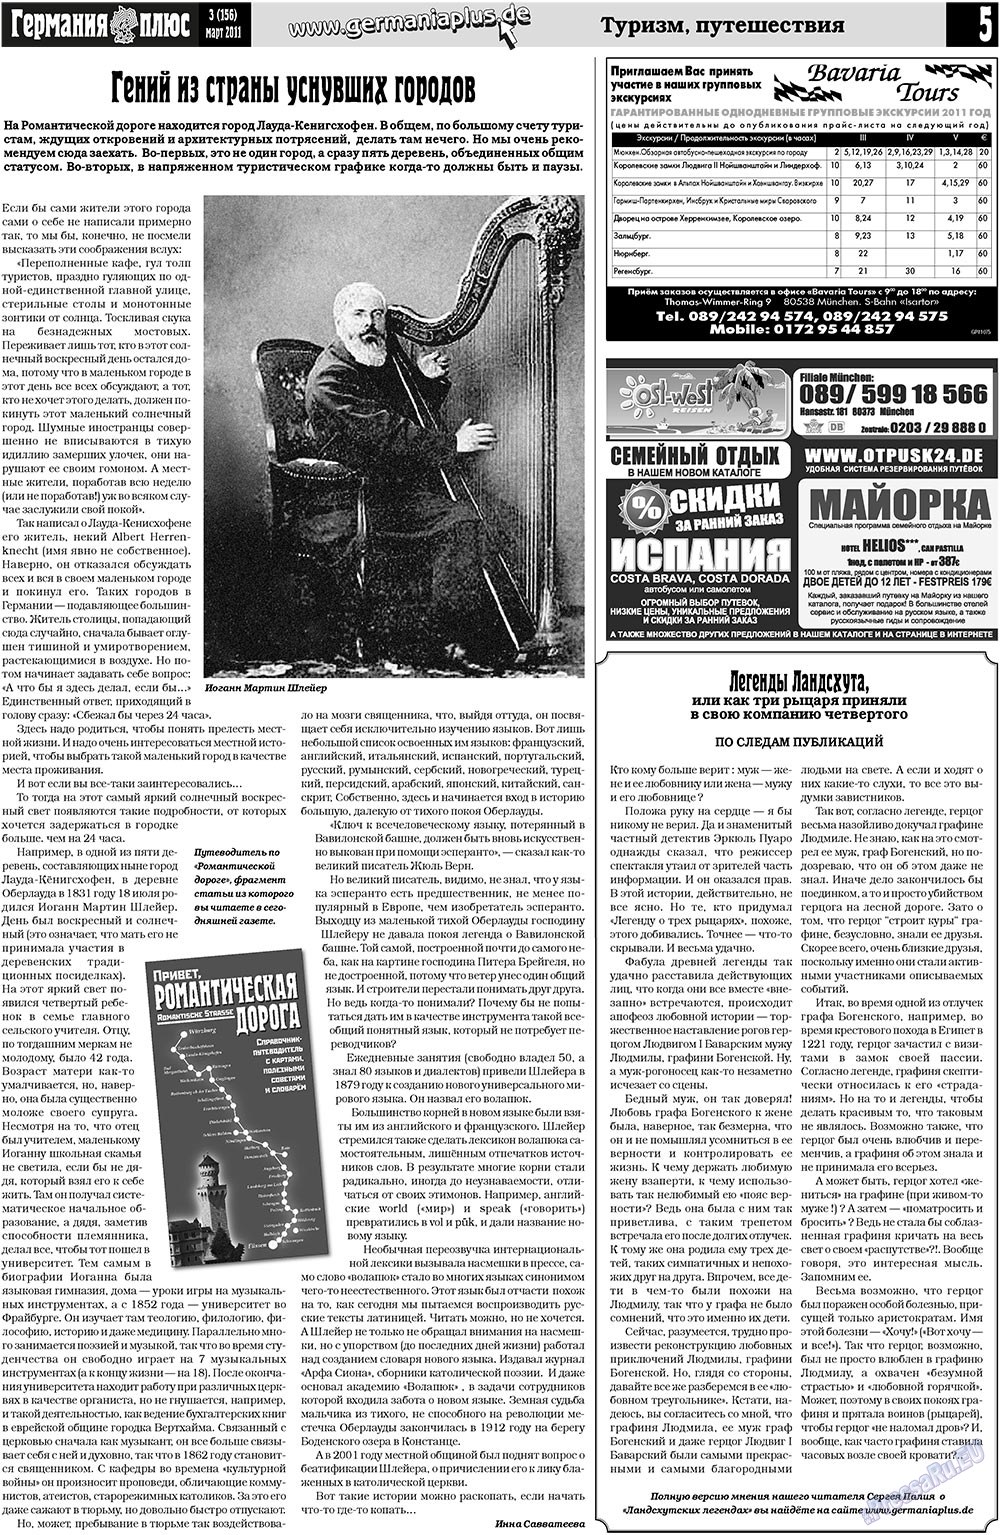 Германия плюс, газета. 2011 №3 стр.5